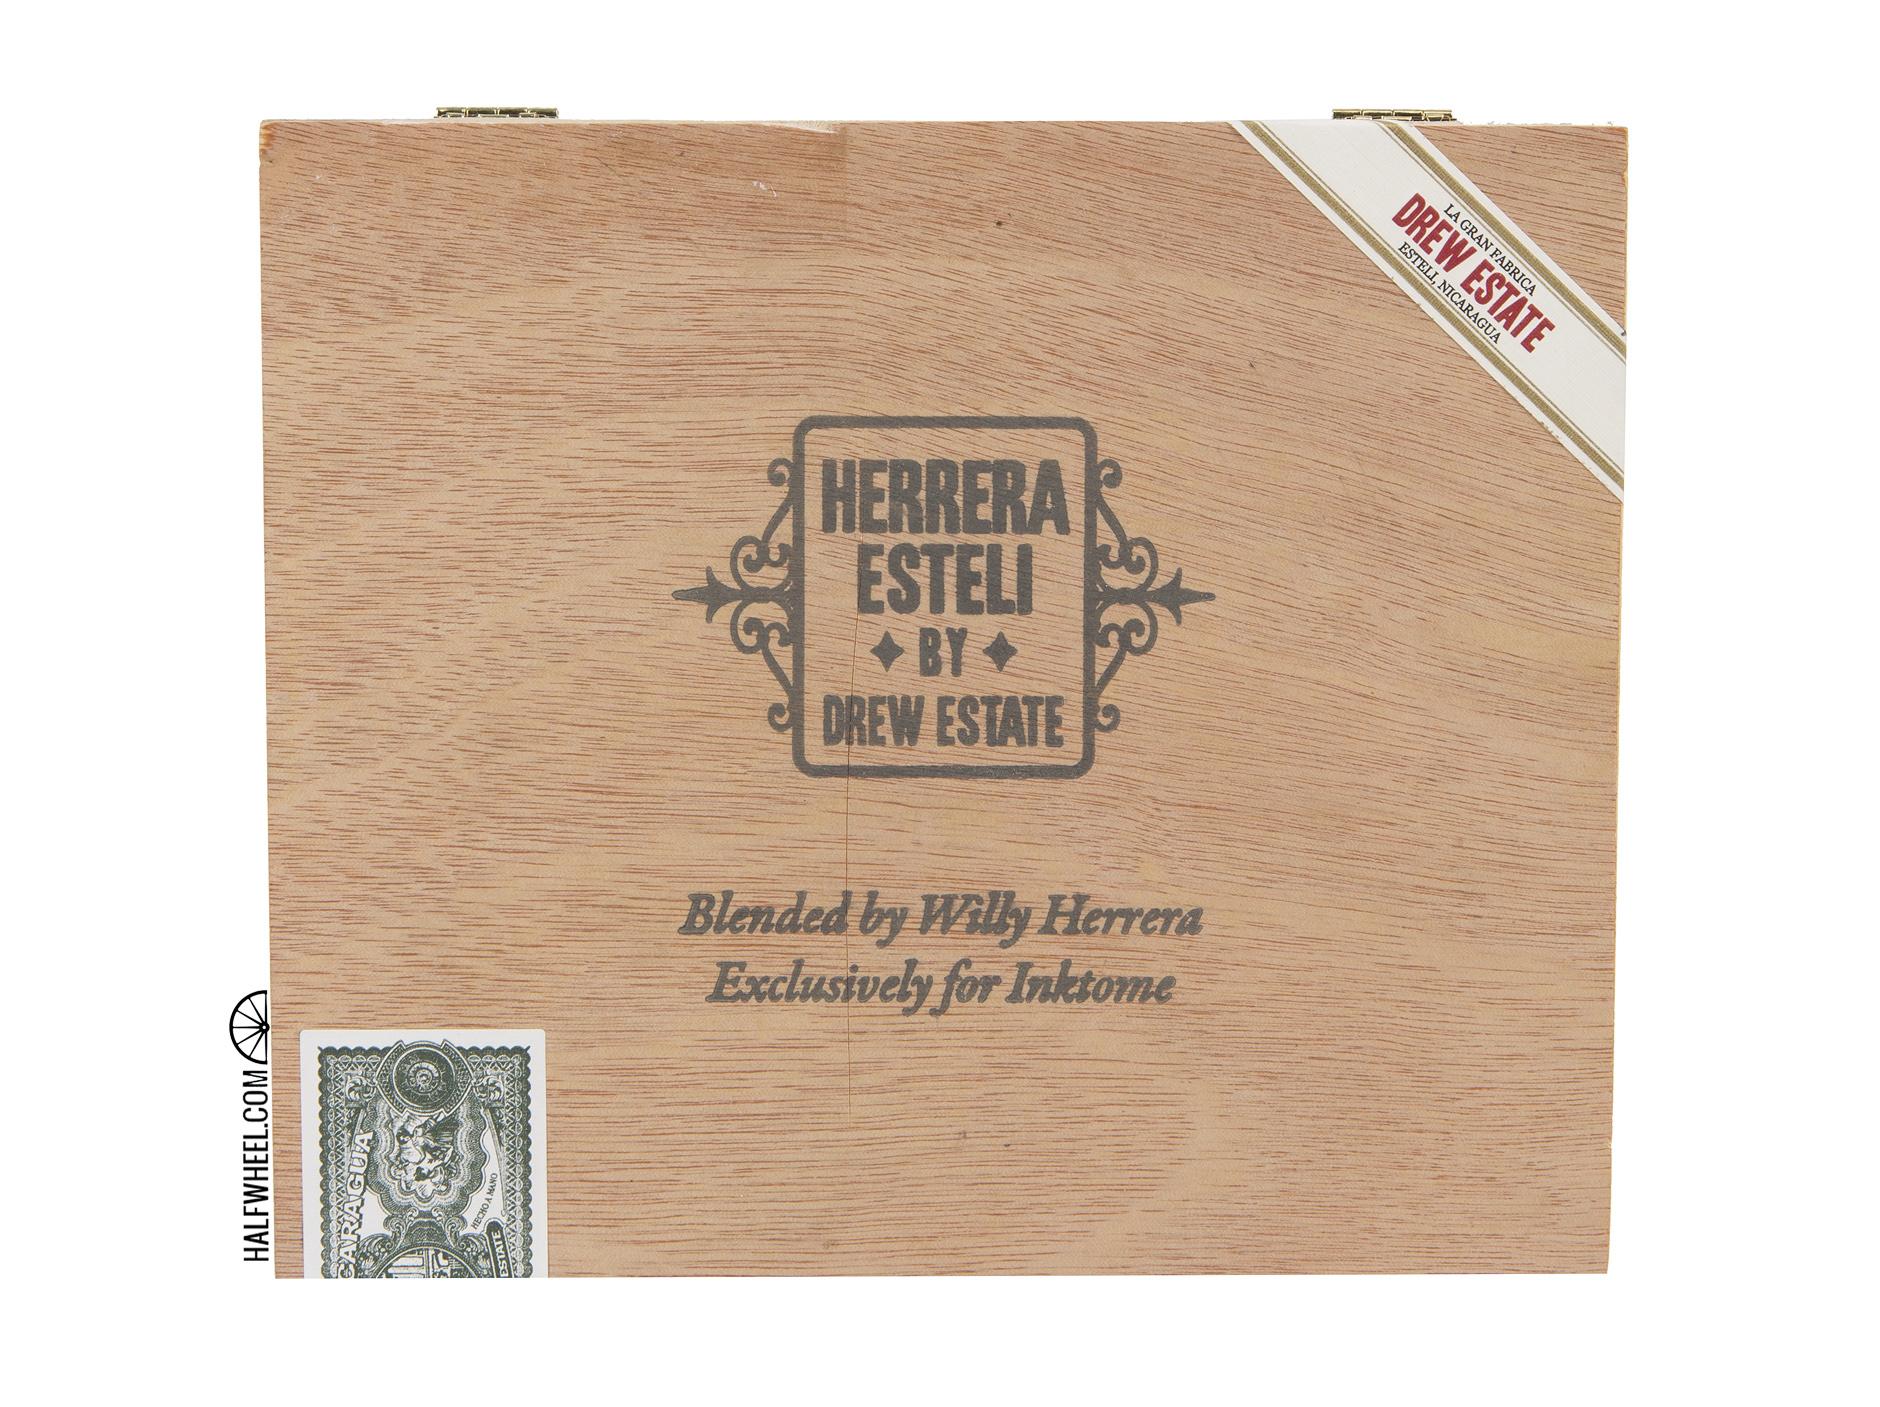 Herrera Esteli Inktome Box 1